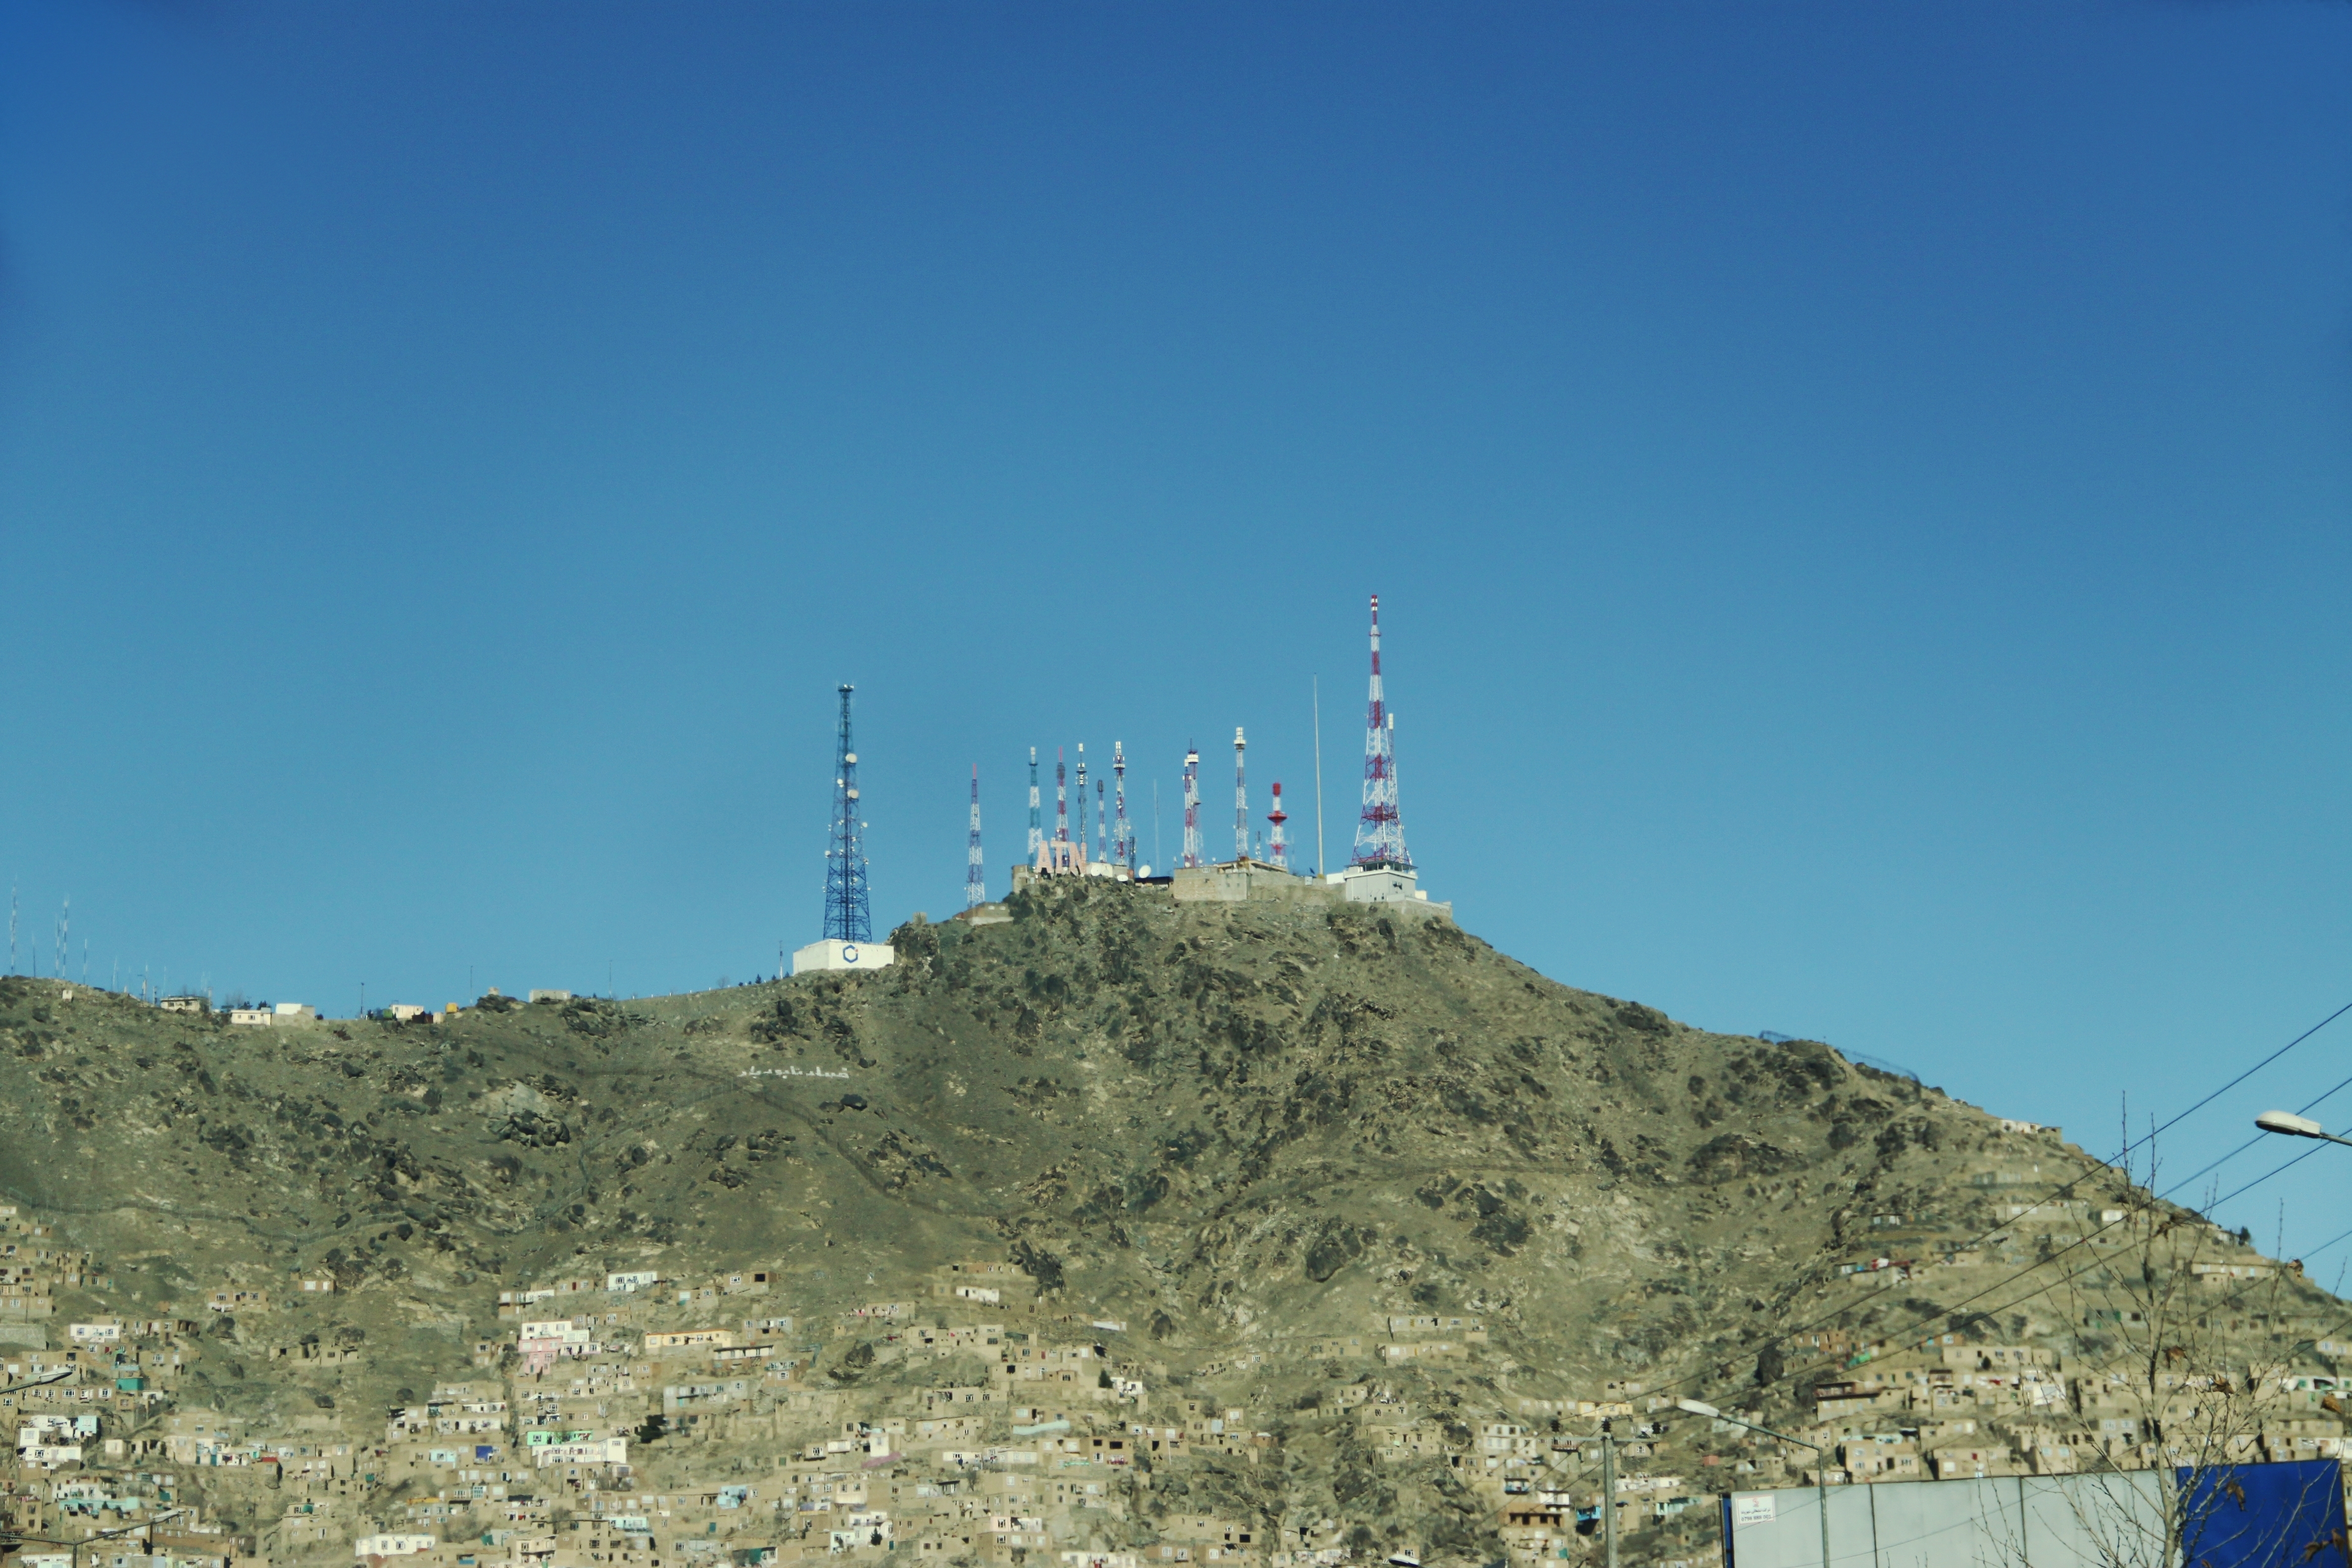 Според някои източници, атаката на частния телевизионен канал в Кабул продължава